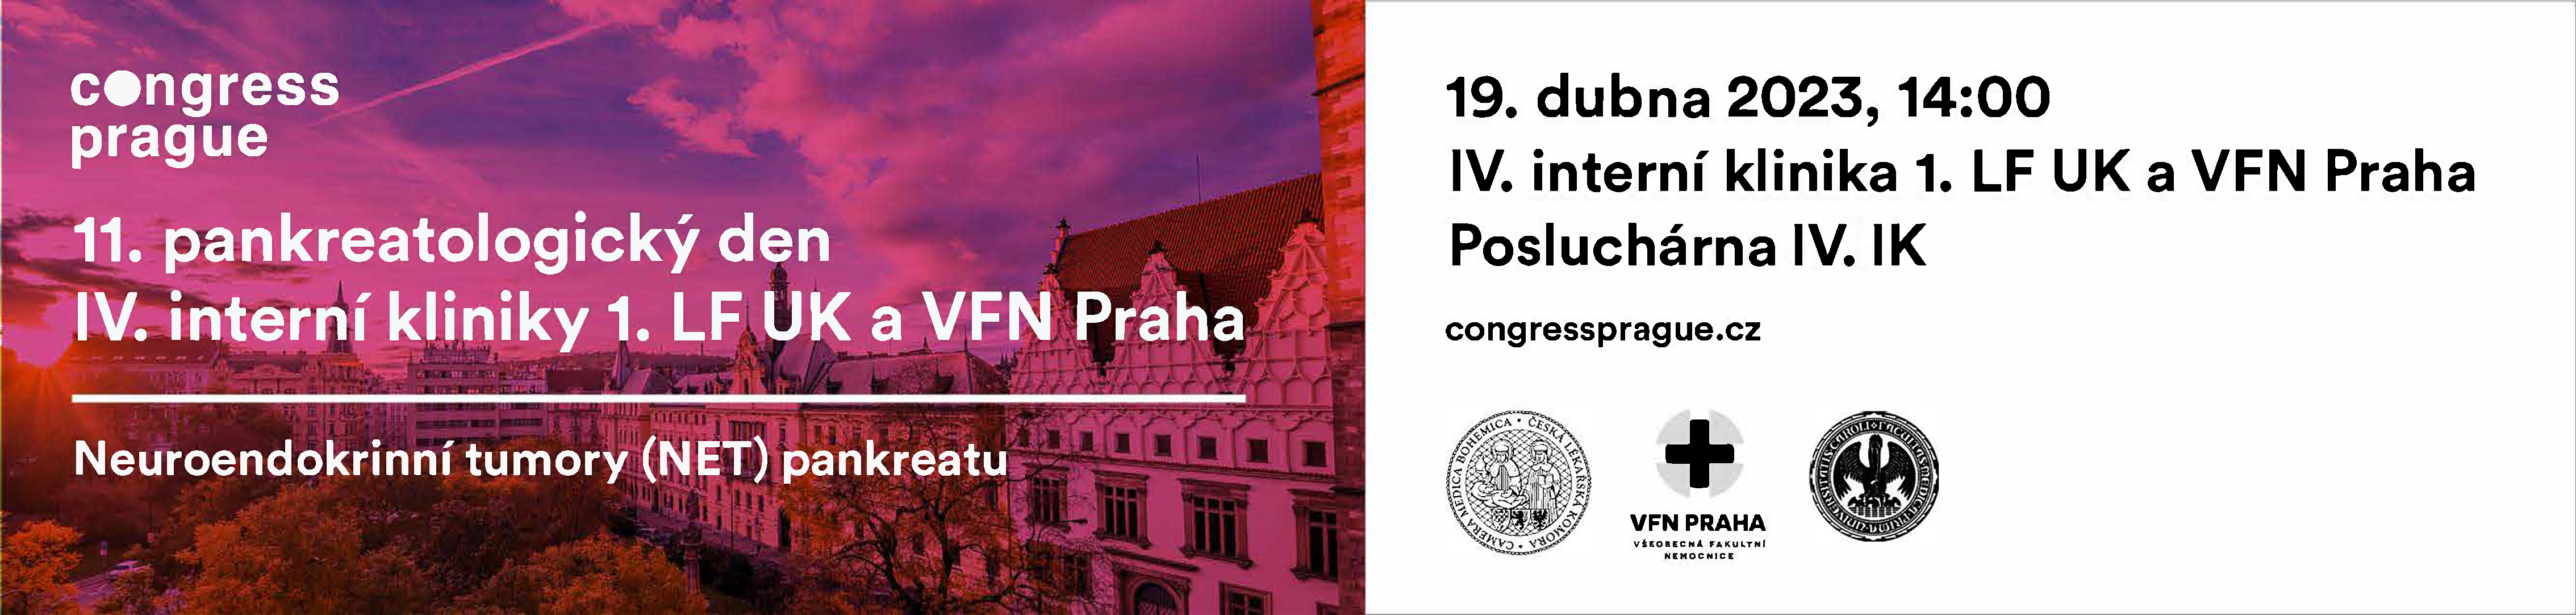 11. pankreatologický den IV. interní kliniky  1. LF UK a VFN Praha